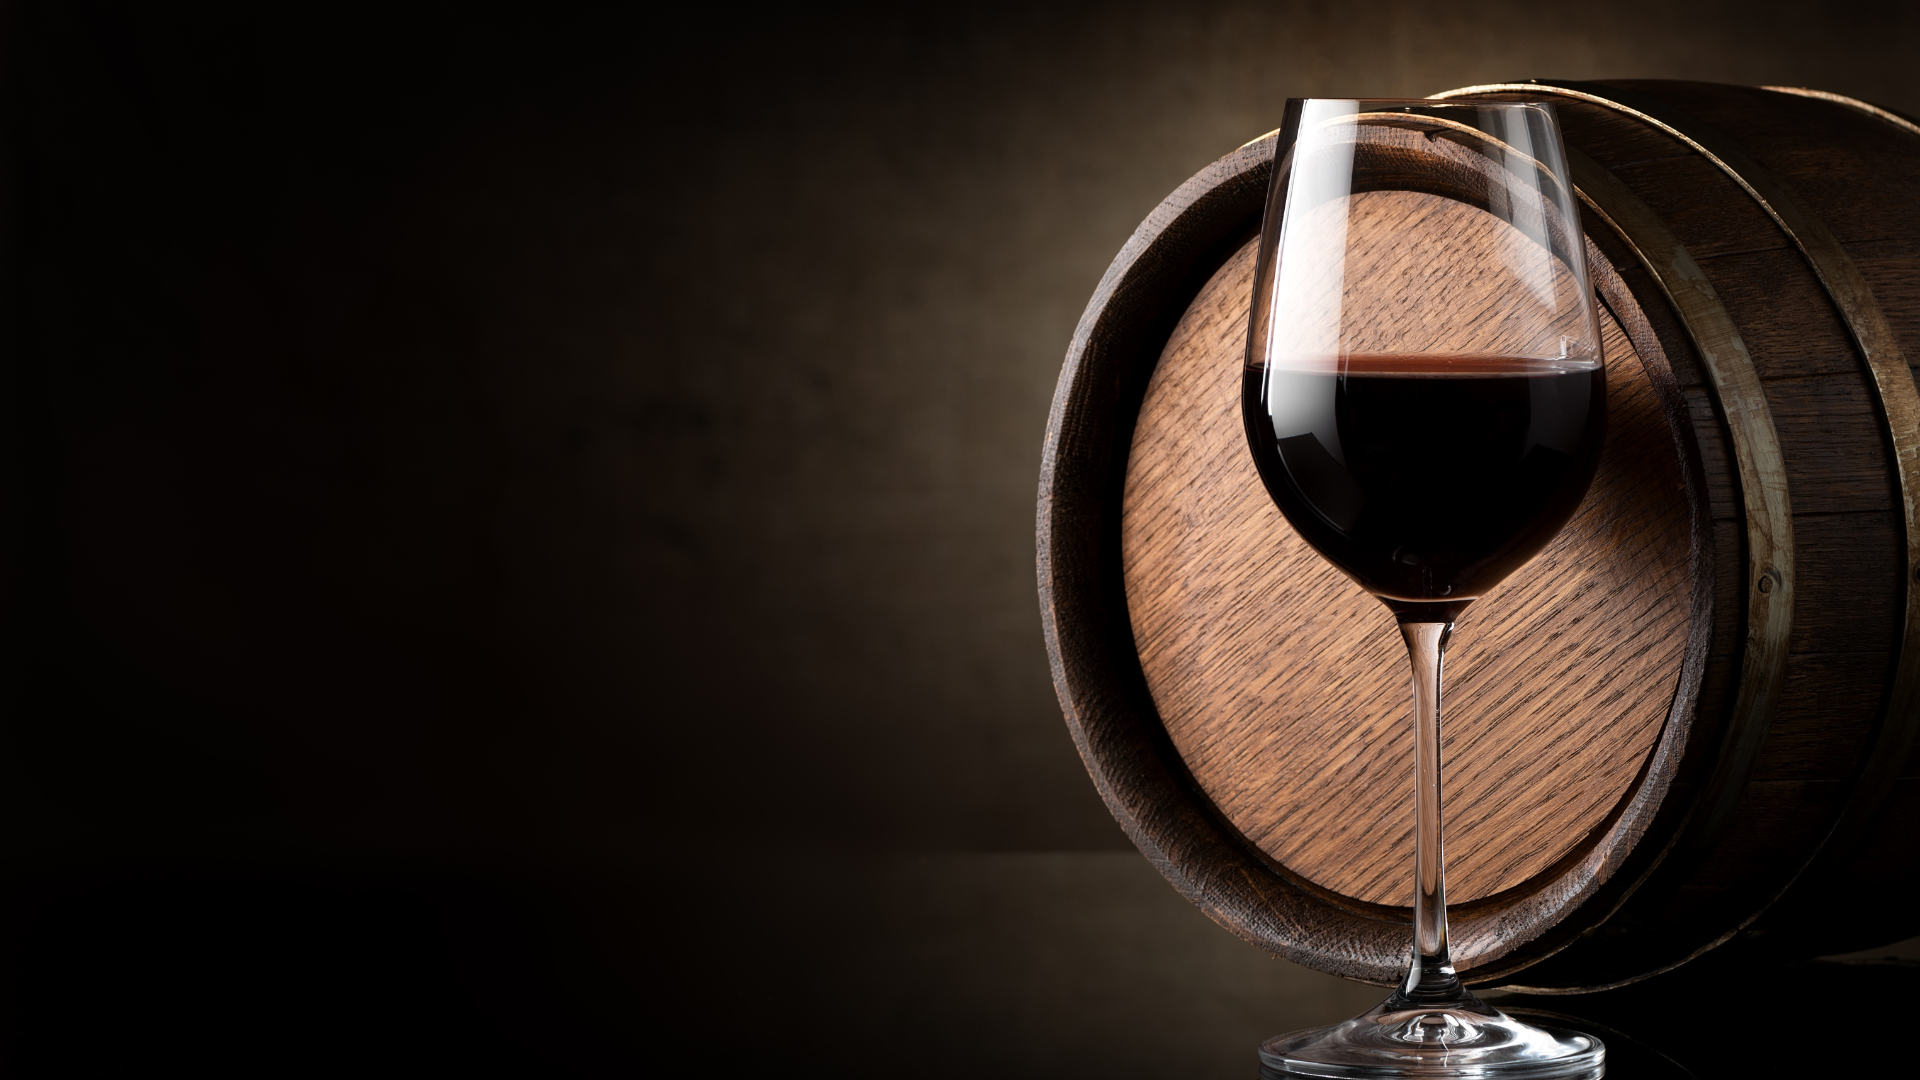 Descubra os mistérios da produção vinícola antiga